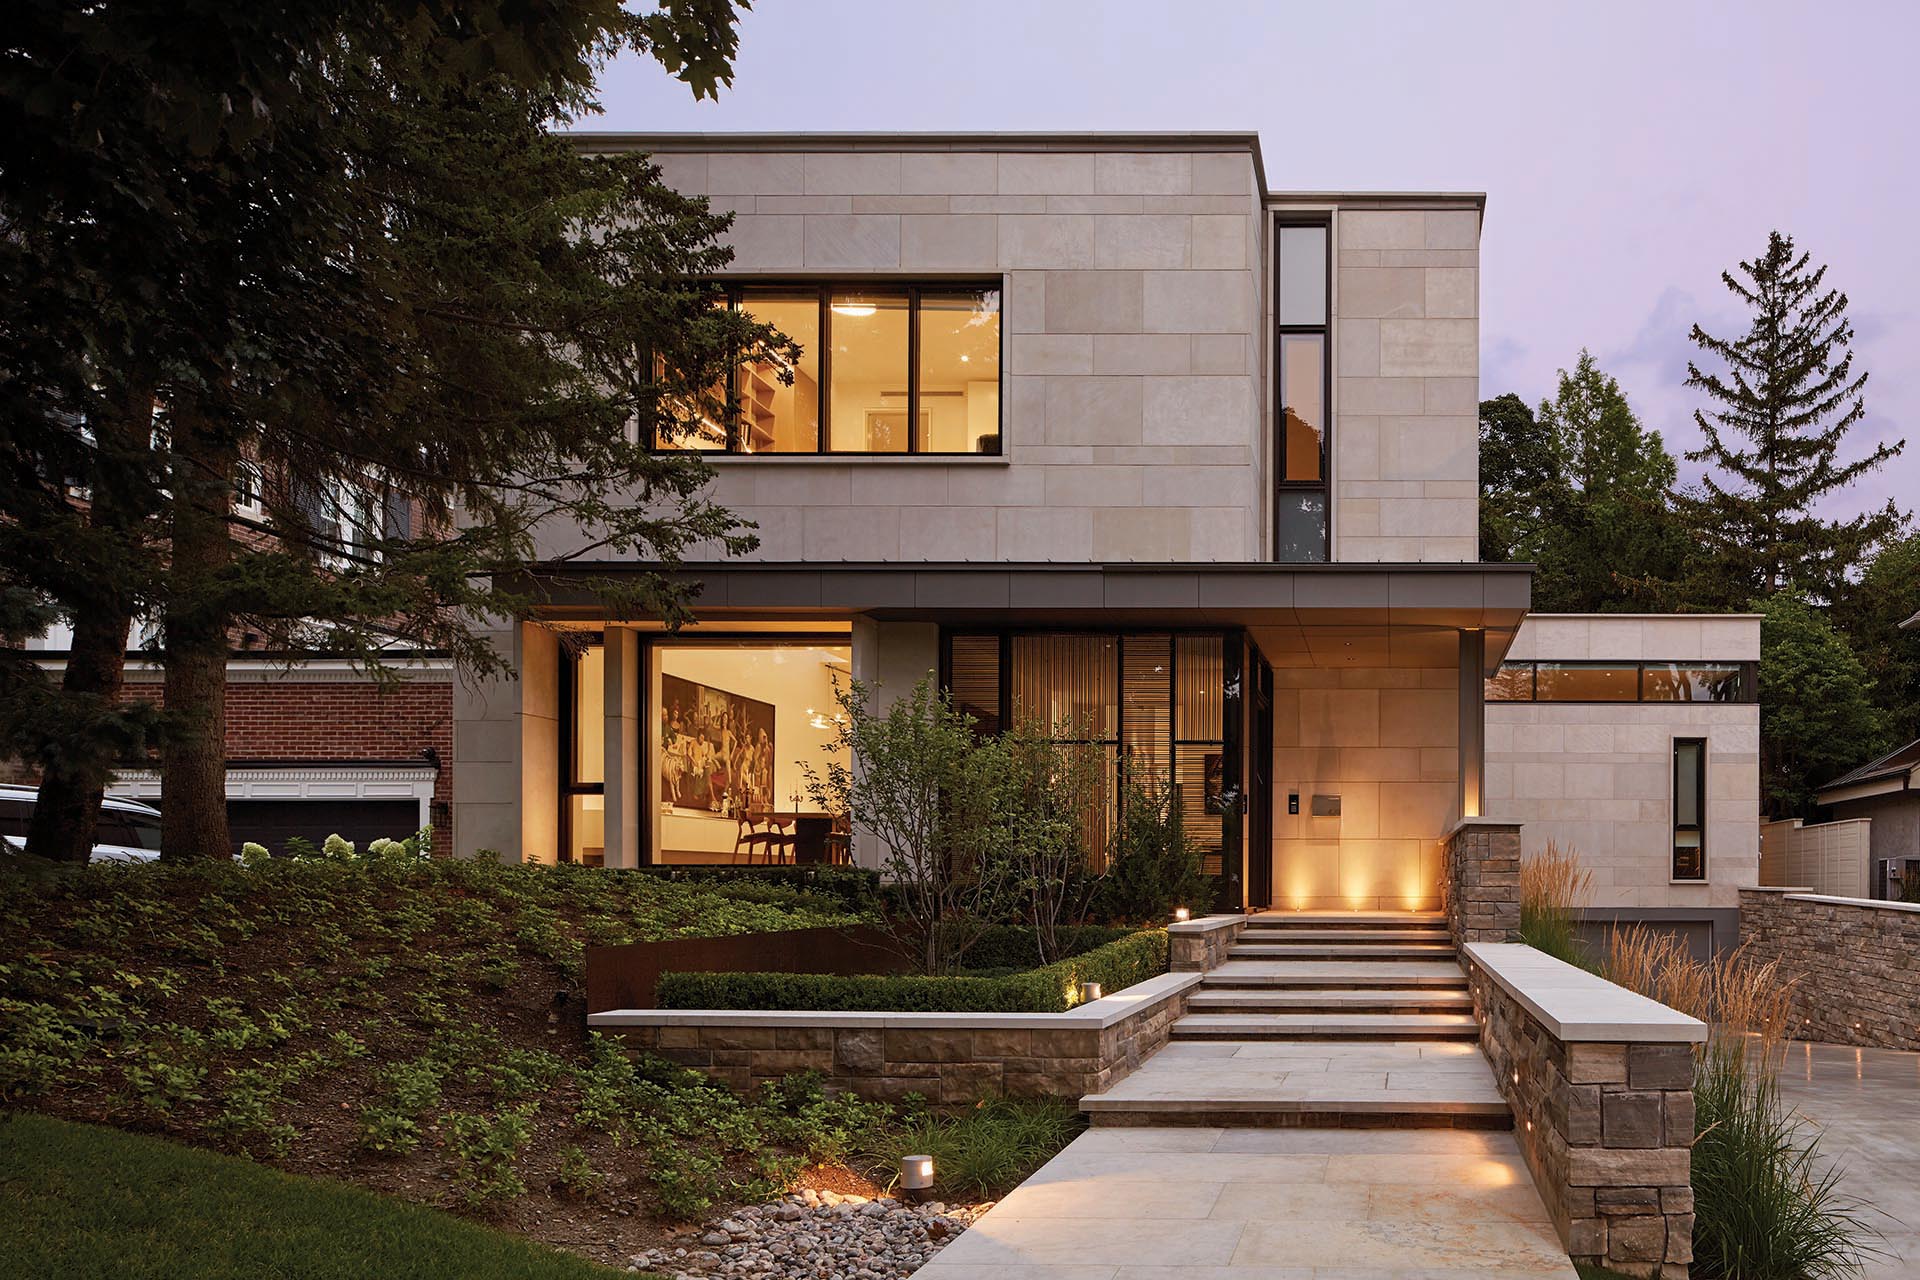 Известняк Индианы и расколотый камень Алгонкин Онтарио облицованы фасадом этого современного дома.